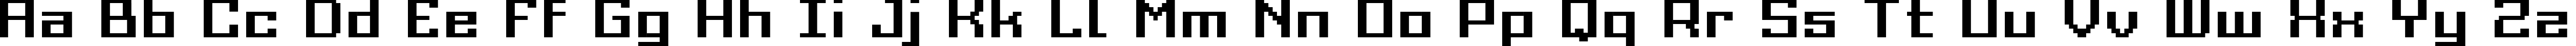 Пример написания английского алфавита шрифтом Grixel Acme 9 Regular Bold Xtnd